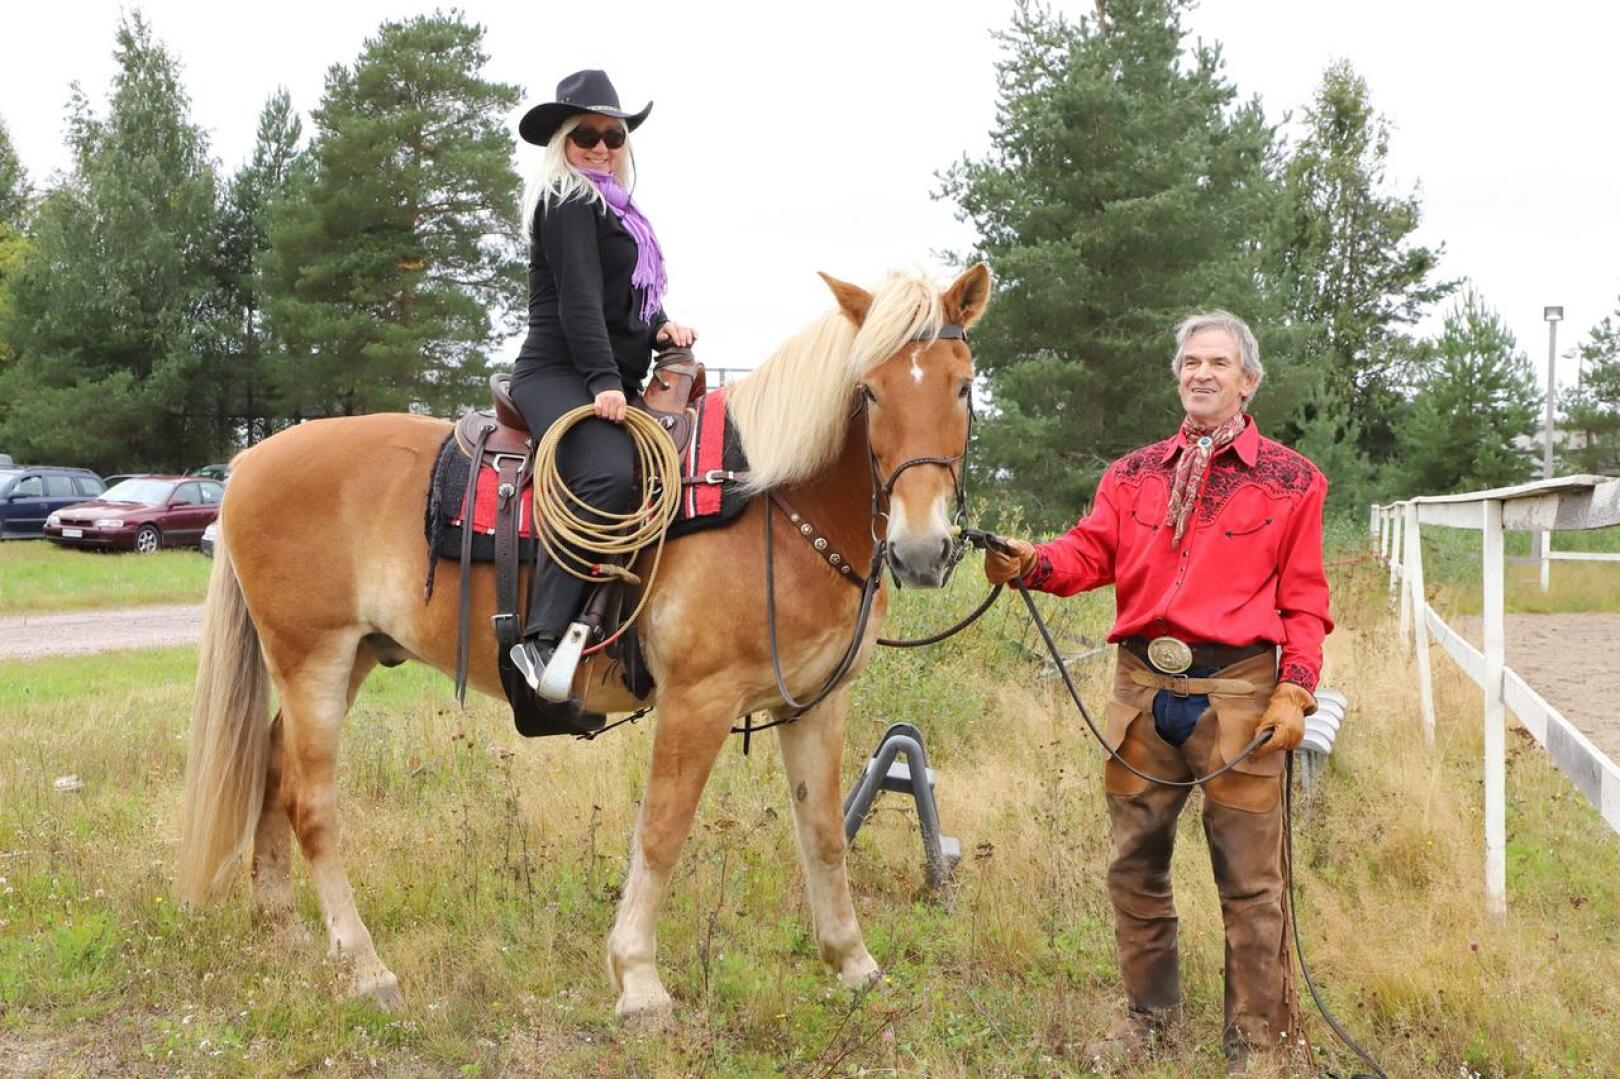 Sarita Sorvisto Heikki Saukon 17-vuotiaan Koda-ruunan selässä. Sorvisto on ollut heppatyttö pienestä pitäen ja toteaa, että hevosen selässä käyminen nostattaa kuumetta hankkia oma hevonen.